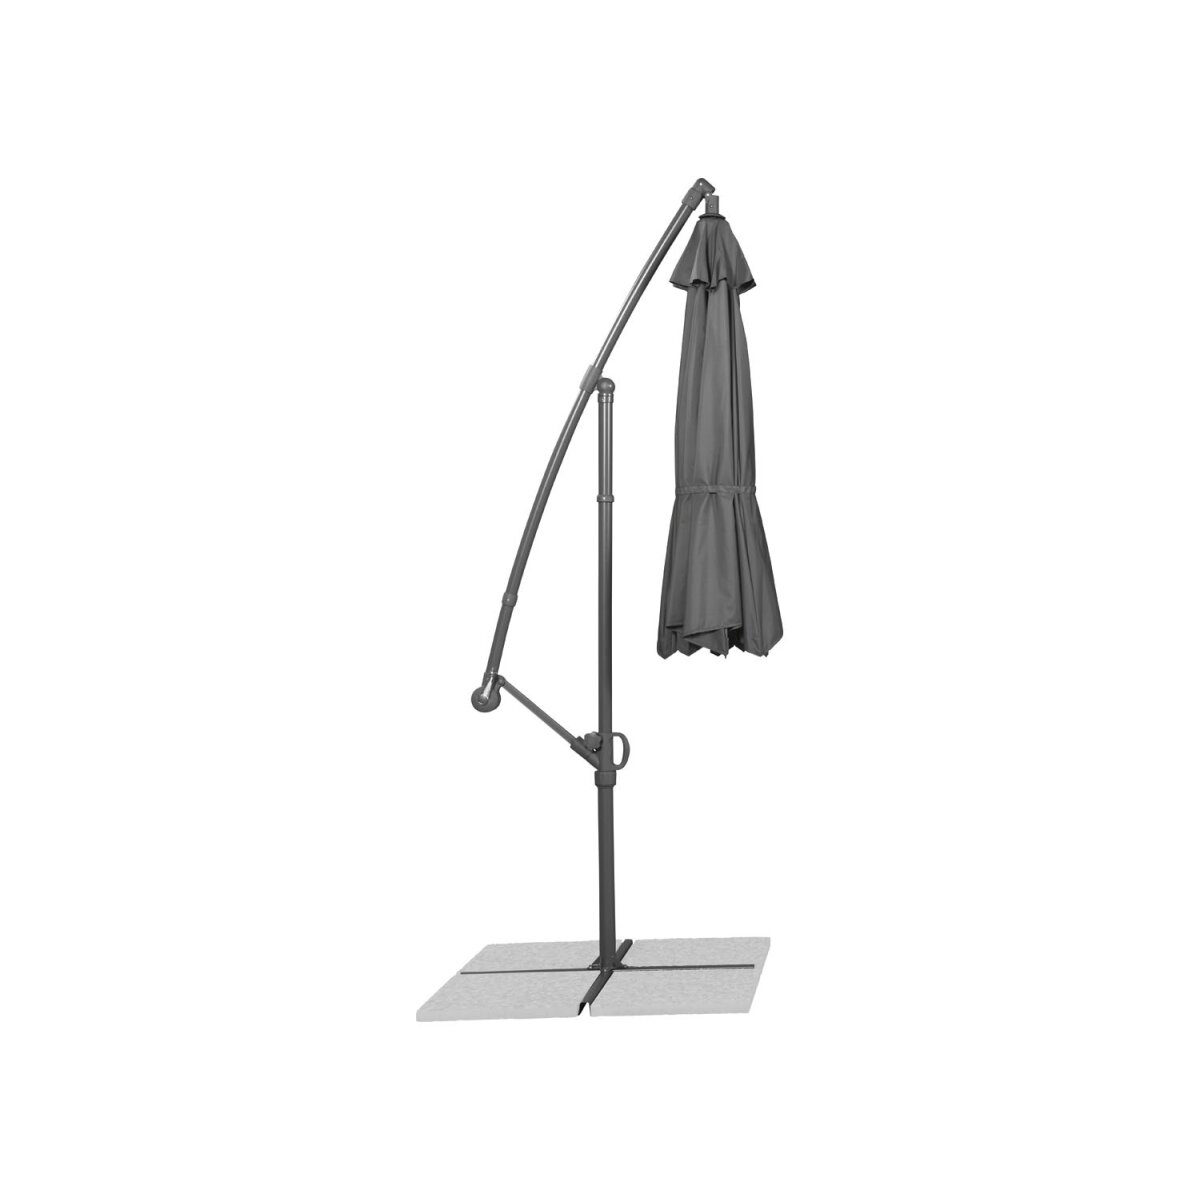 LIVARNO home Ampelschirm, mit verstellbarer Schirmneigung, anthrazit -  B-Ware gut, 100,99 €